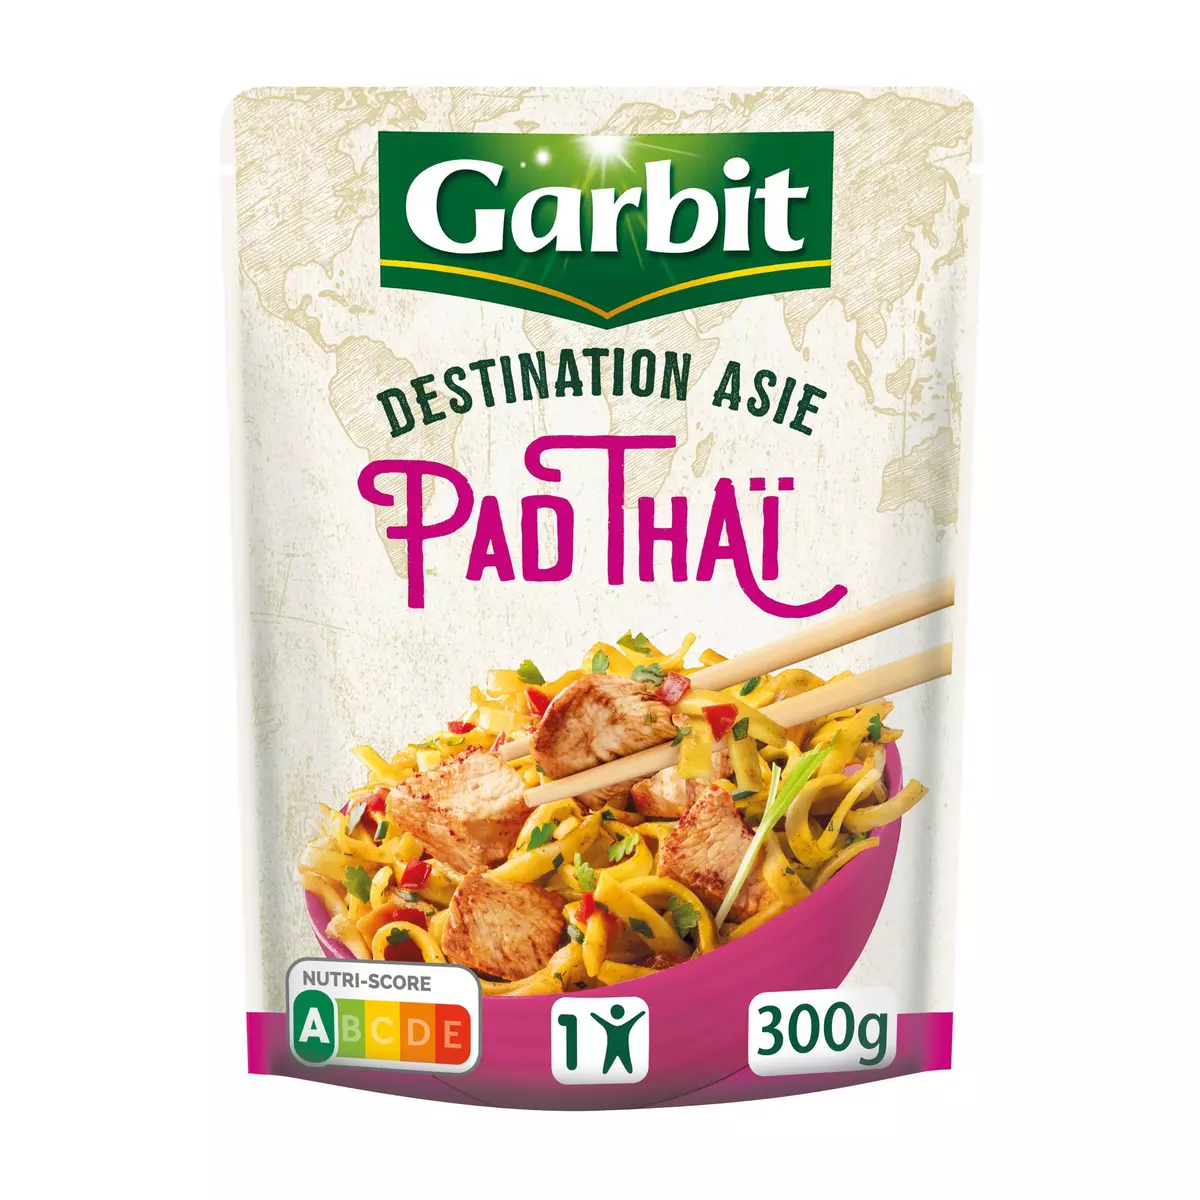 GARBIT Pad Thaï nouilles poulet Destination Asie sachet express 1 personne 300g